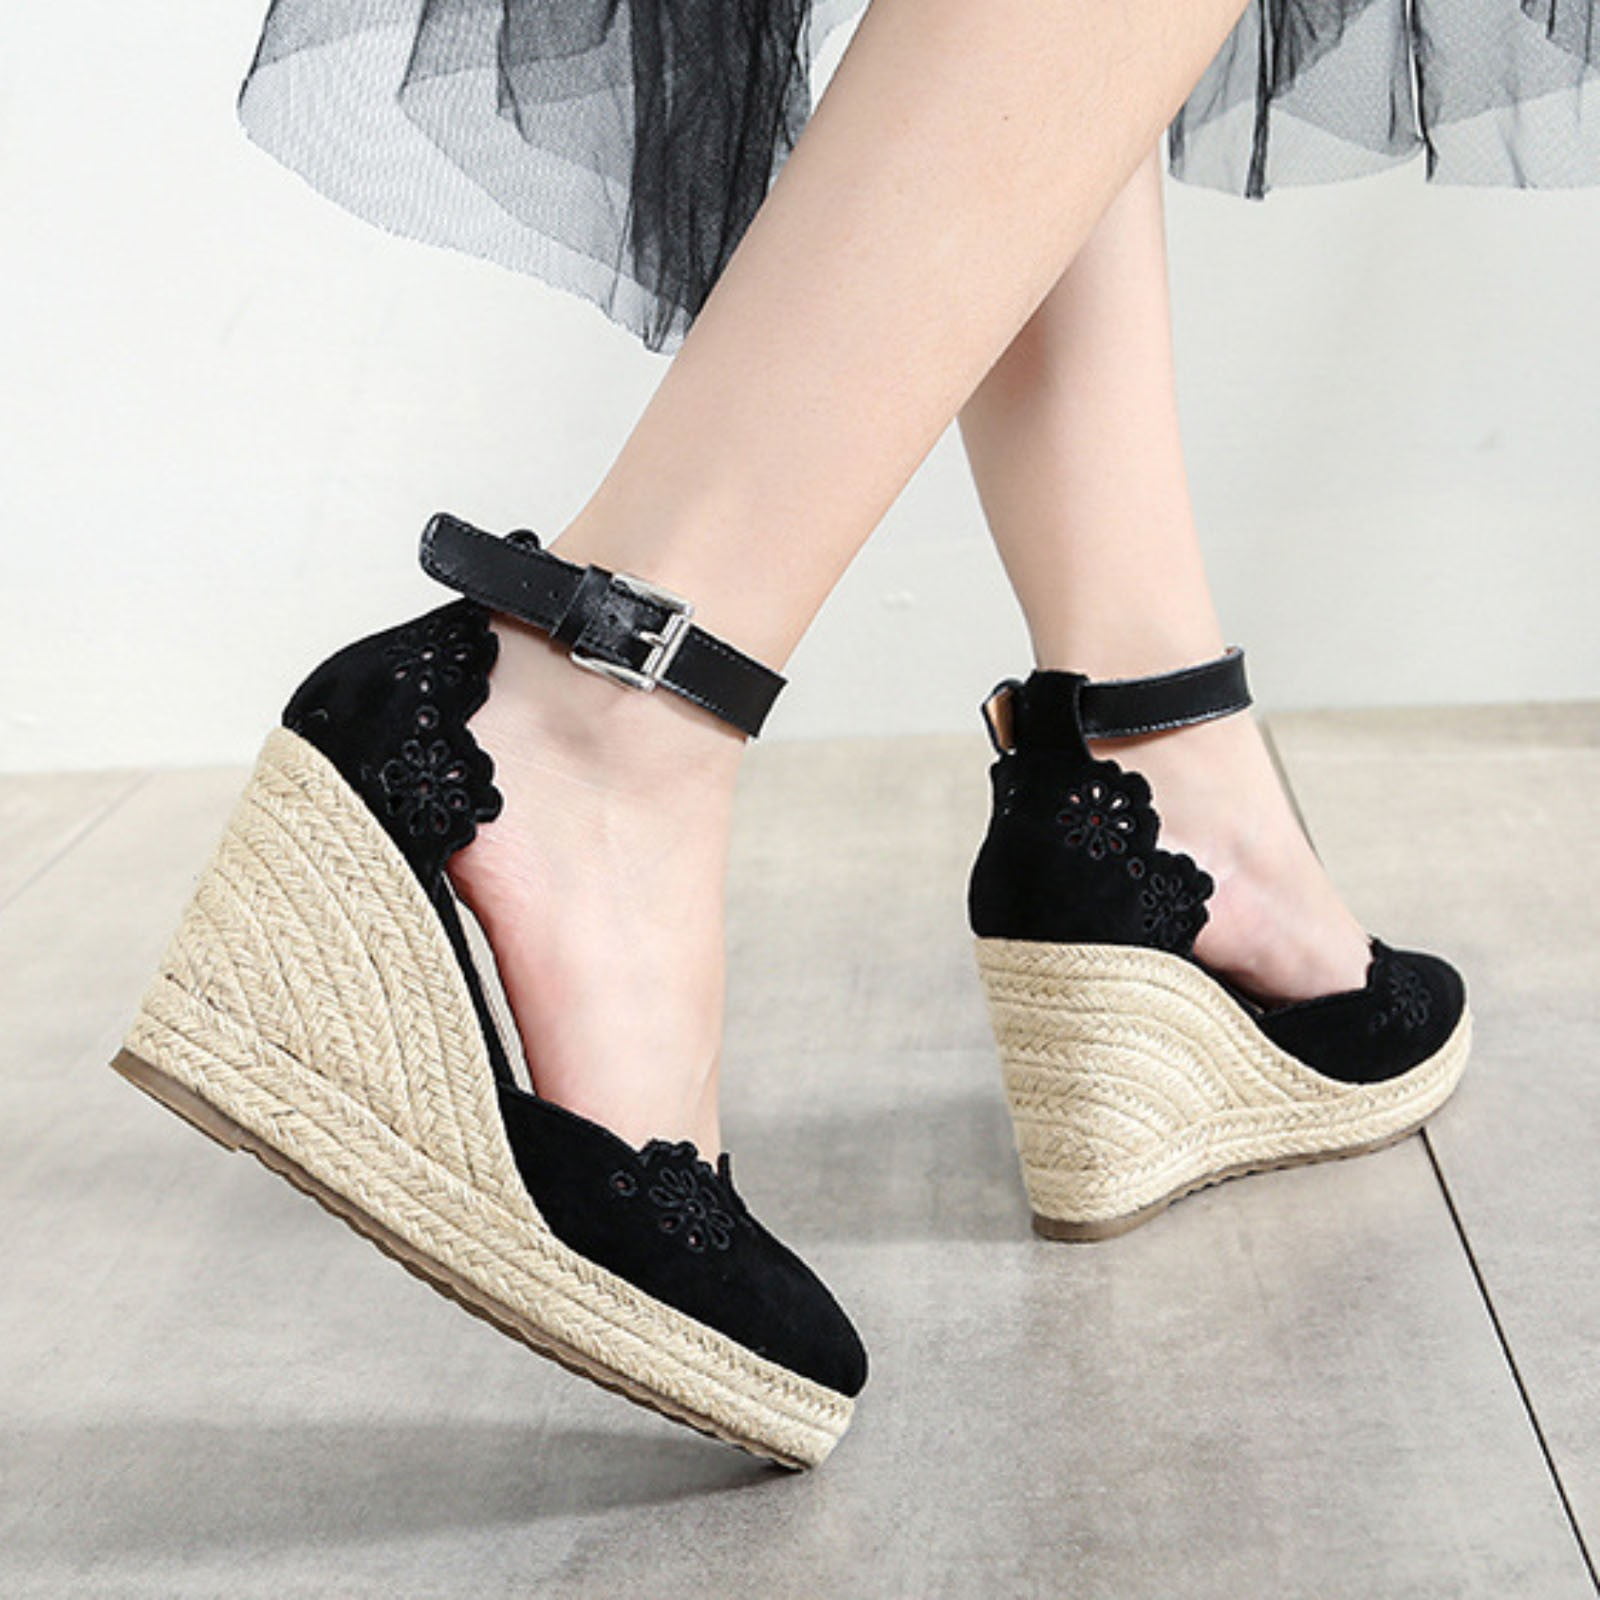 Women Shoes Women's Fashion Platform Wedge Heels Large Size Colorblock  Roman Sandals Black 8.5 - Walmart.com